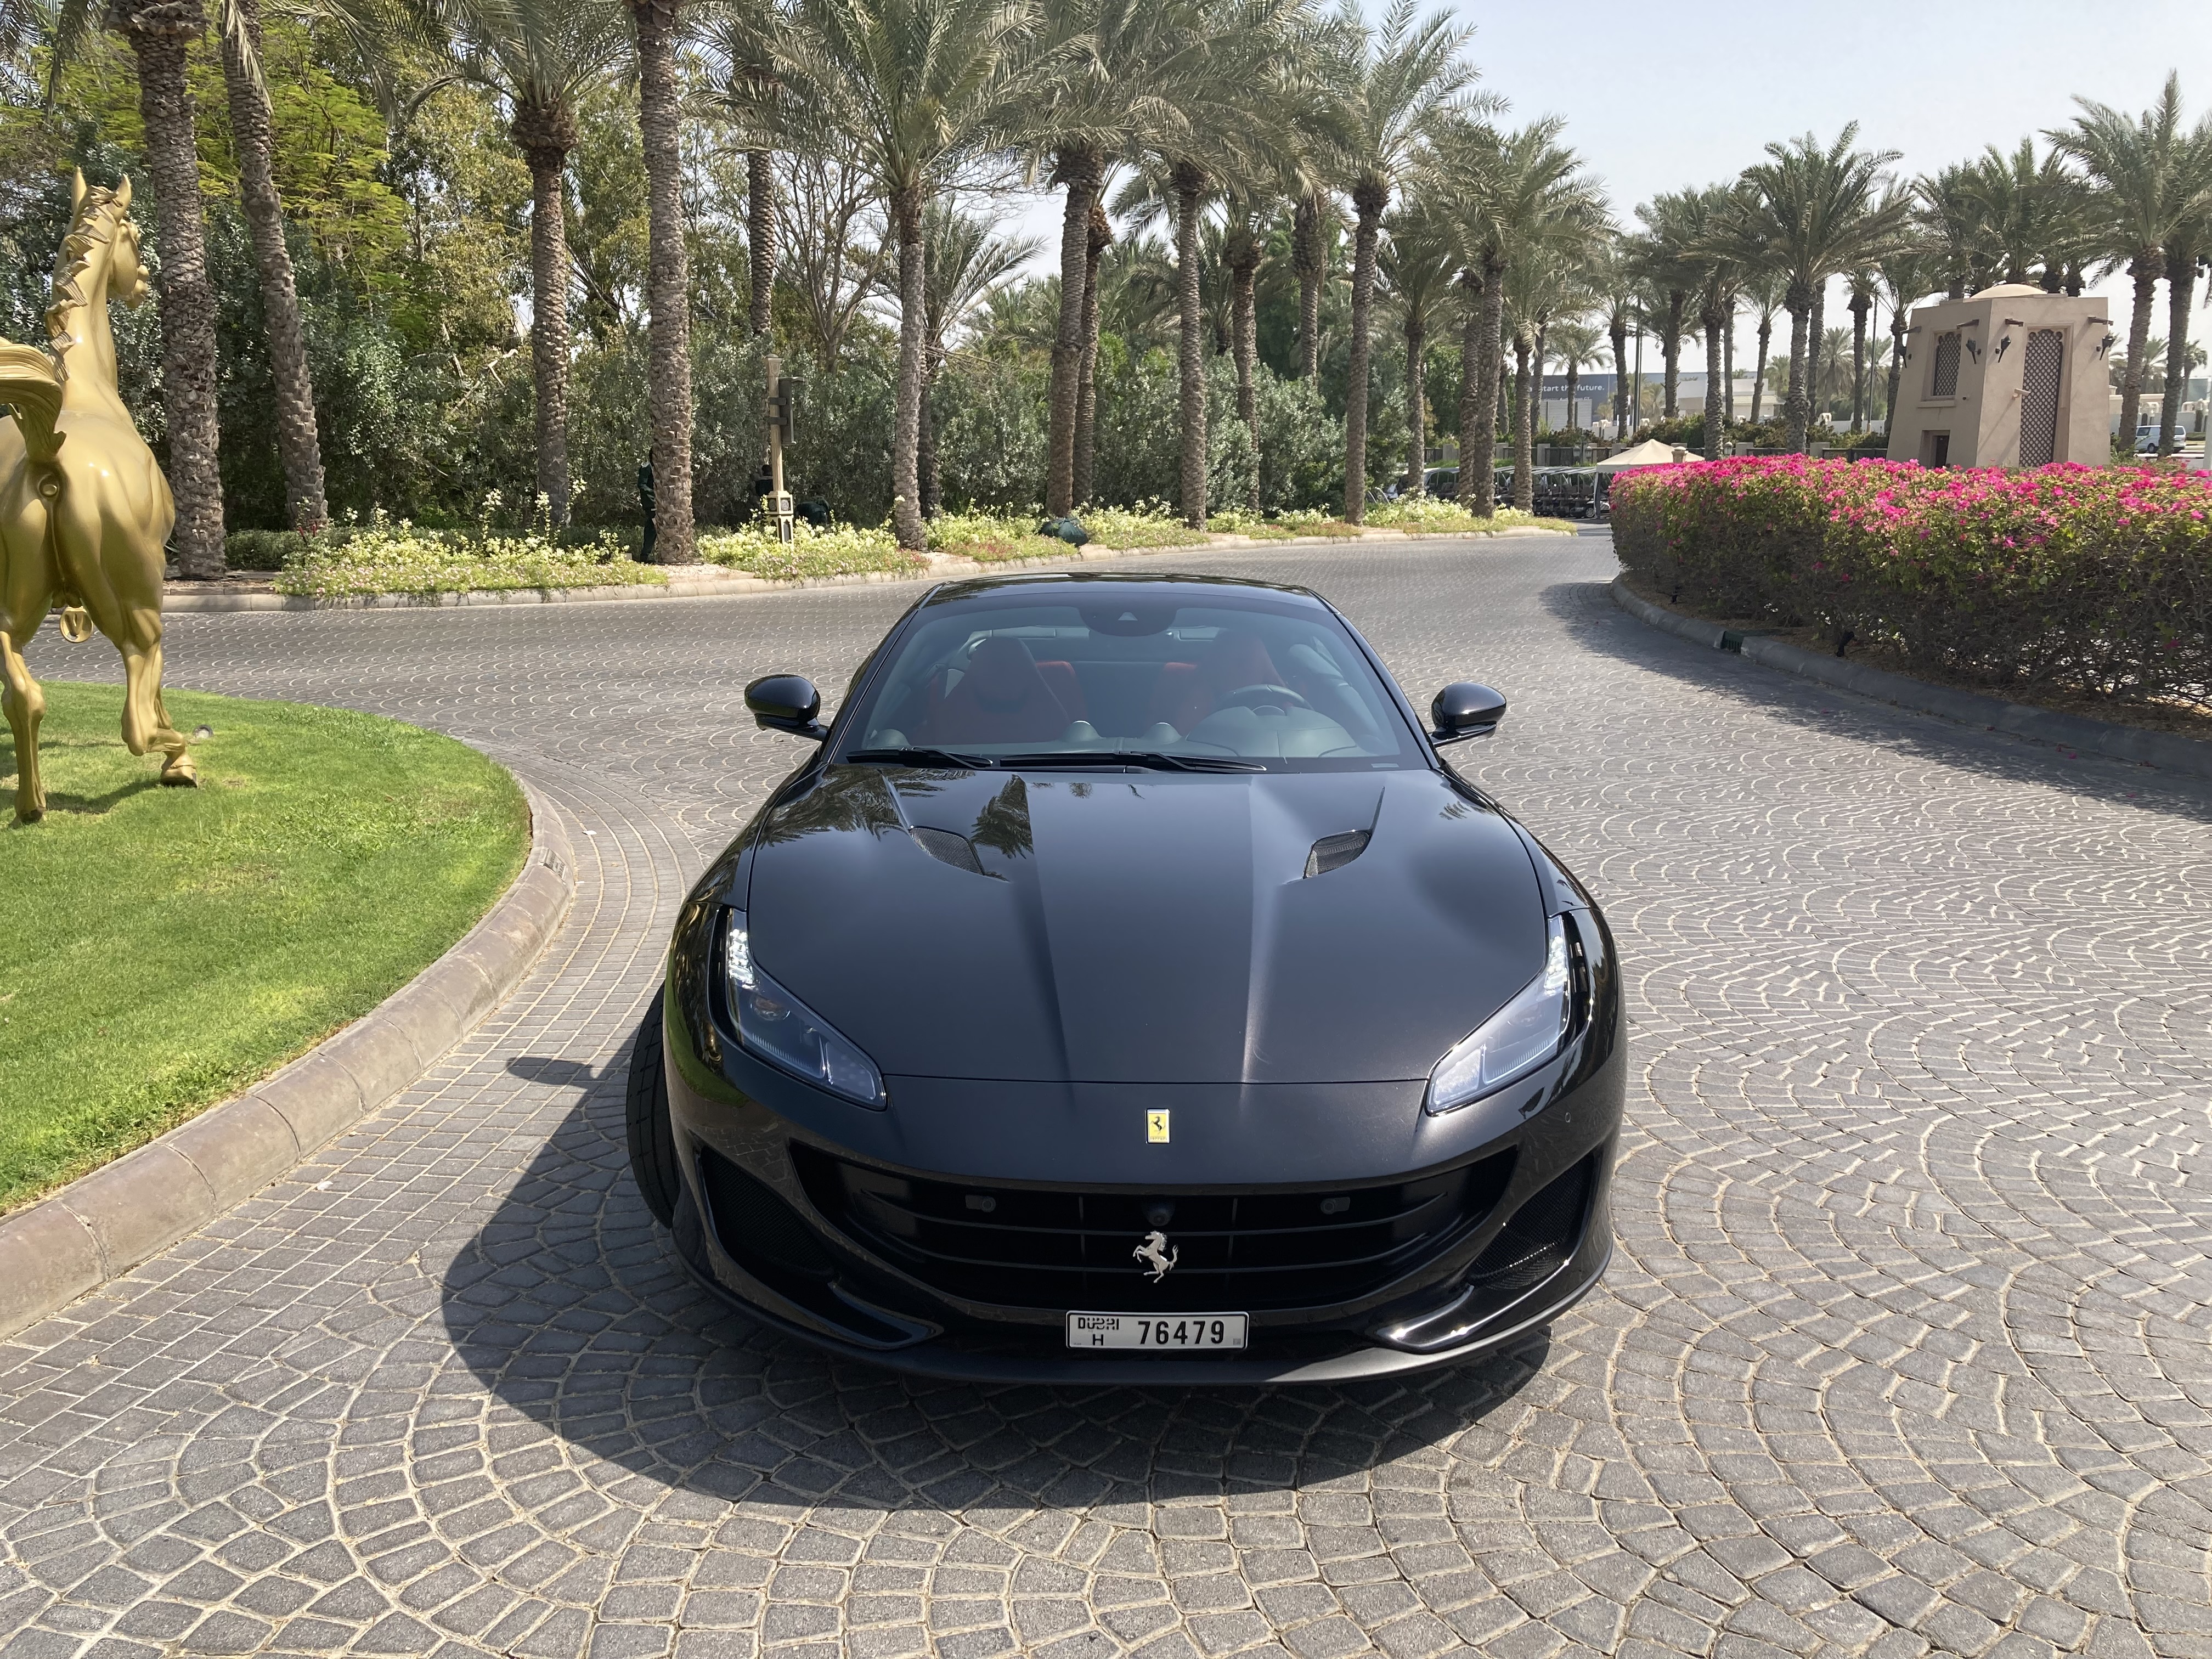 FERRARI Portofino 2020 Listed By Exford | Rent a Car Dubai | Cheap Car Rental Dubai AED 50/Day | Car Hire UAE